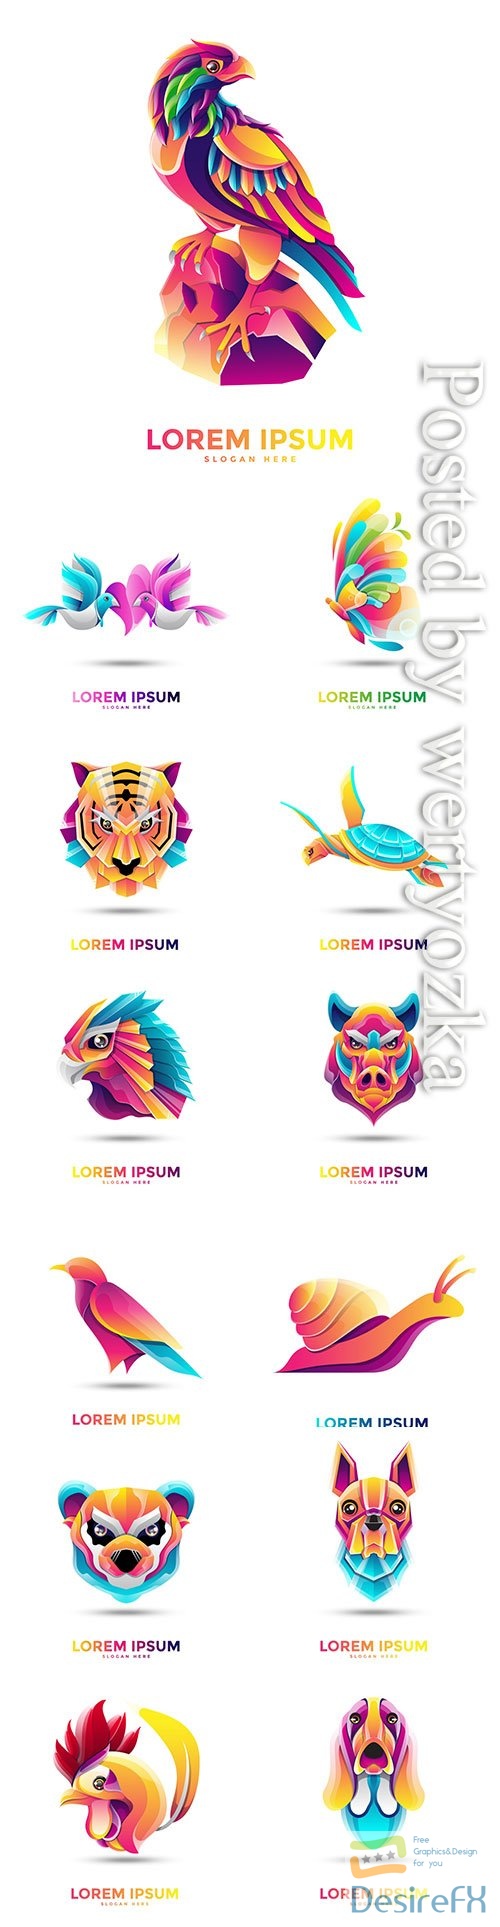 Multicolored animal logos in vector